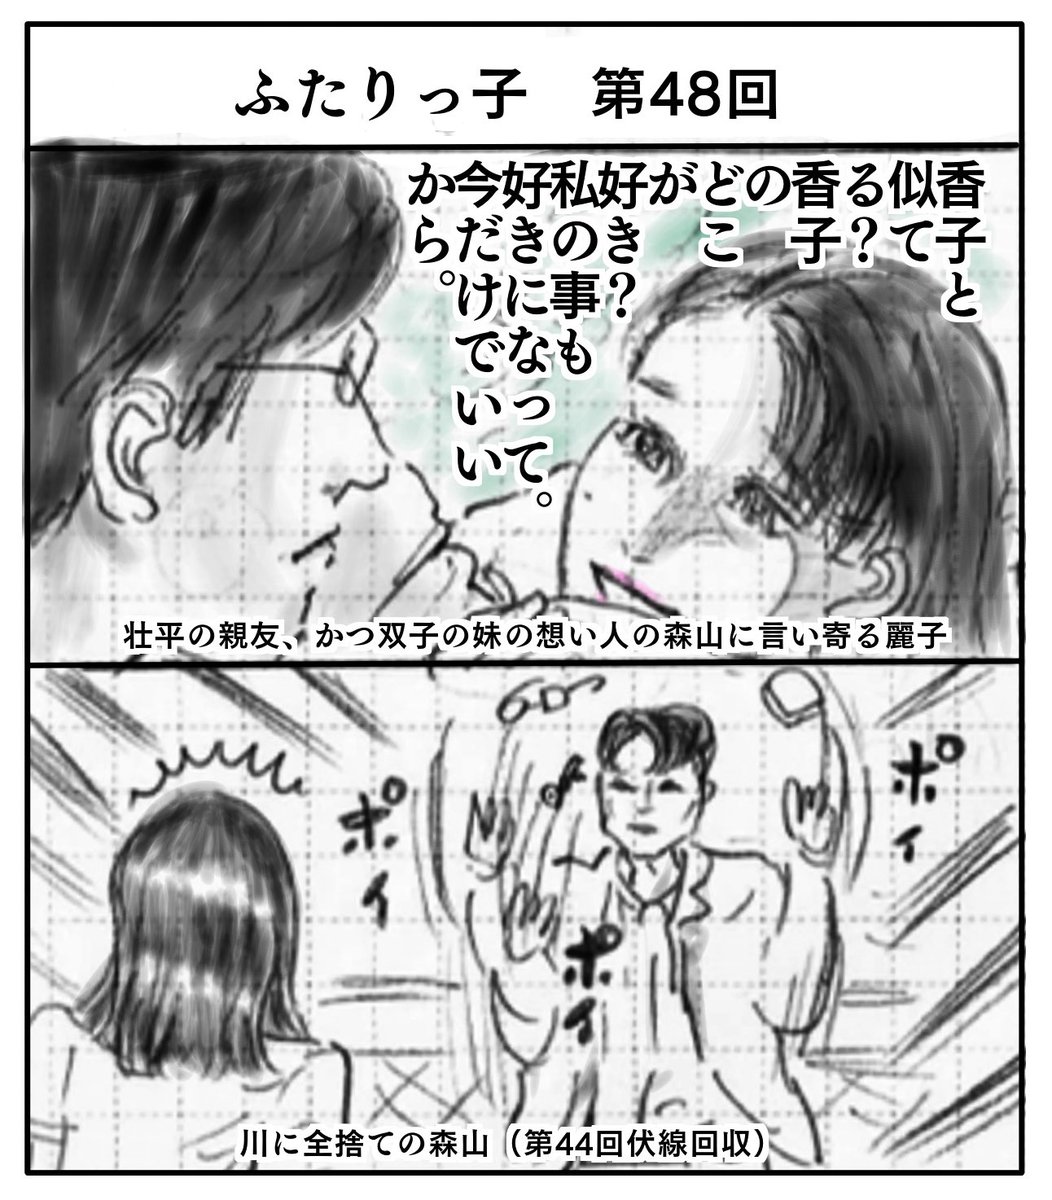 山本みつ湖 Yamamoto Diario さんの漫画 516作目 ツイコミ 仮